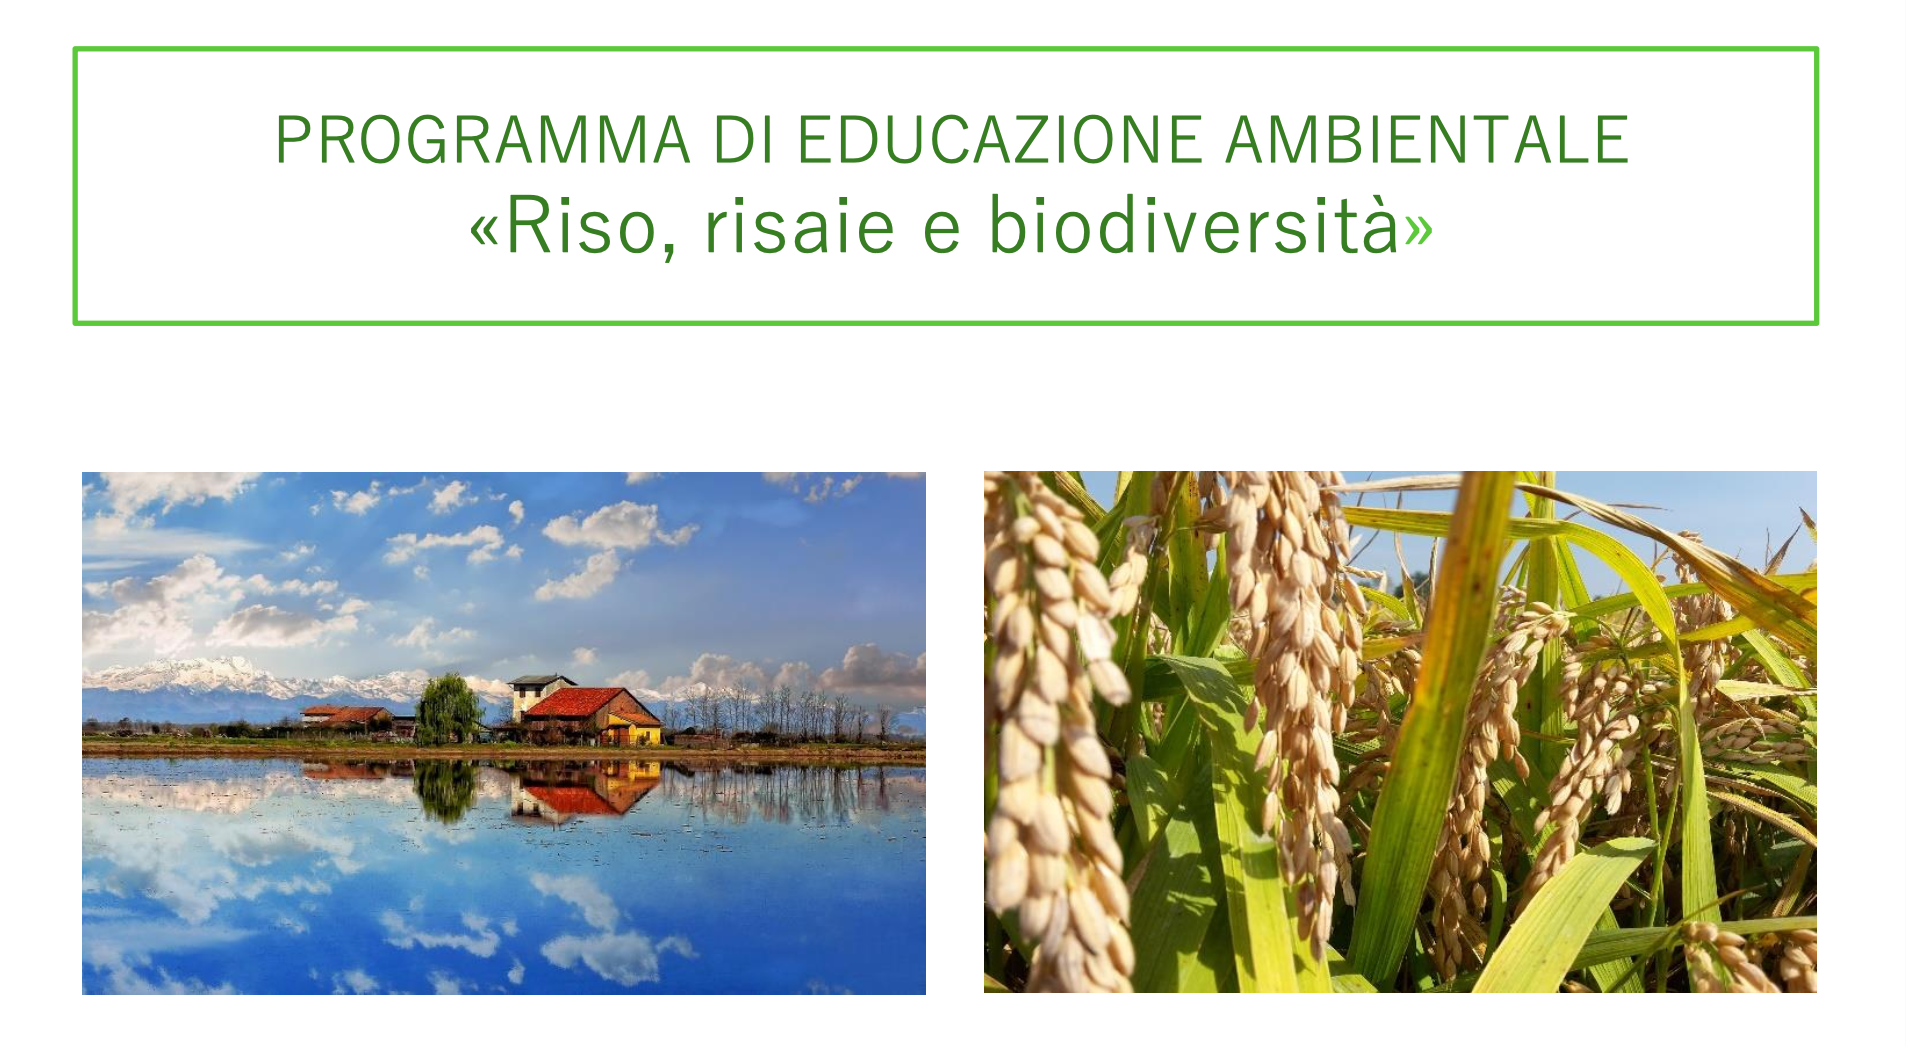 Programma di educazione ambientale Riso risaie e biodiversità